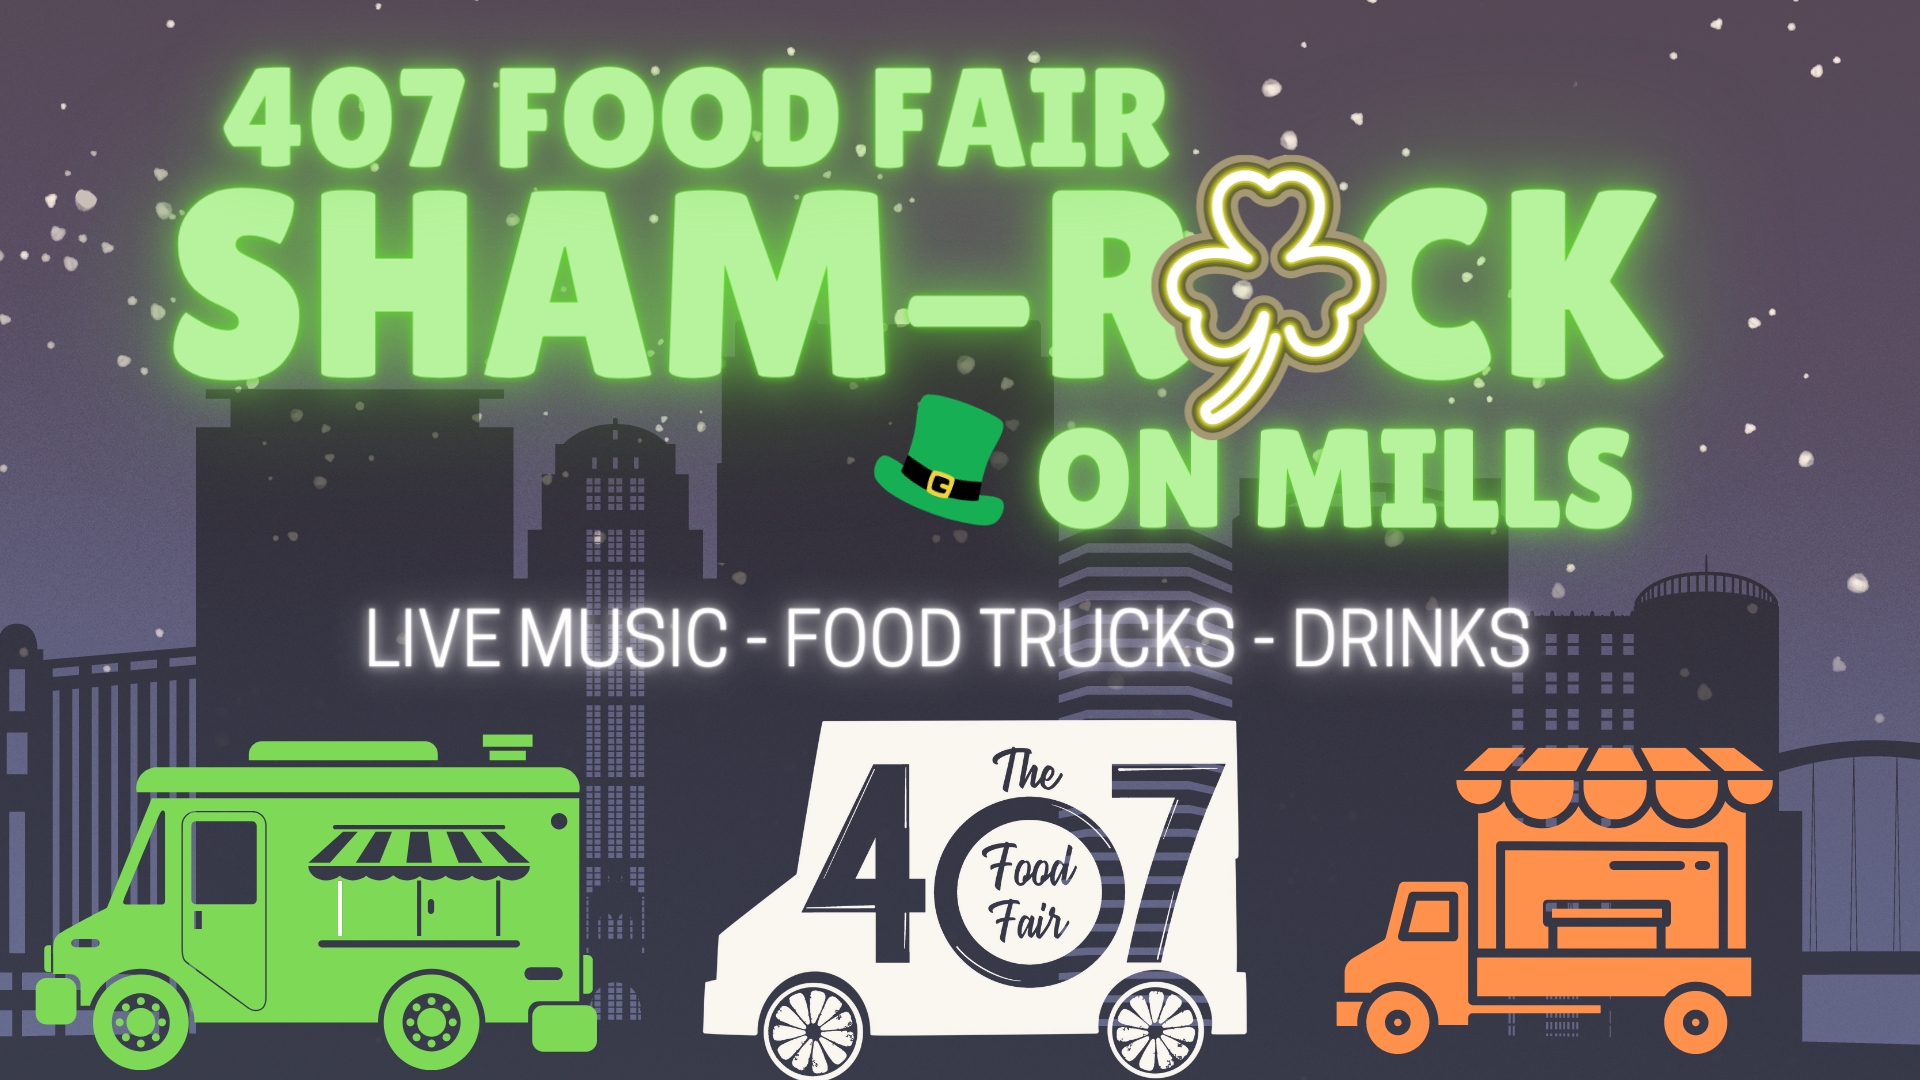 407 Food Fair: Sham-Rock